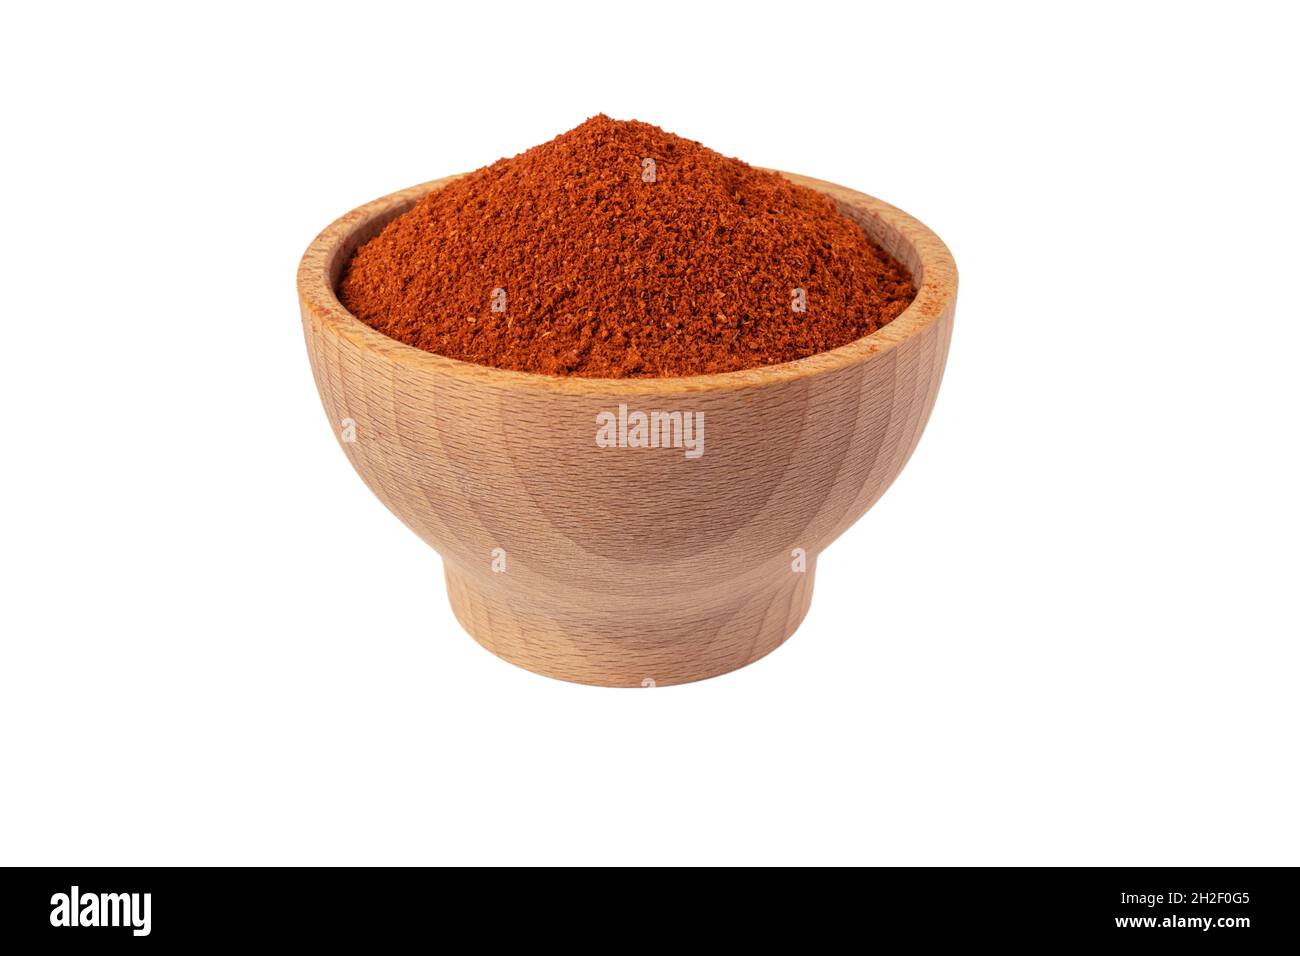 Tandoori Masala mix di spezie in ciotola di legno isolato su sfondo bianco. Spezie e ingredienti alimentari. Foto Stock